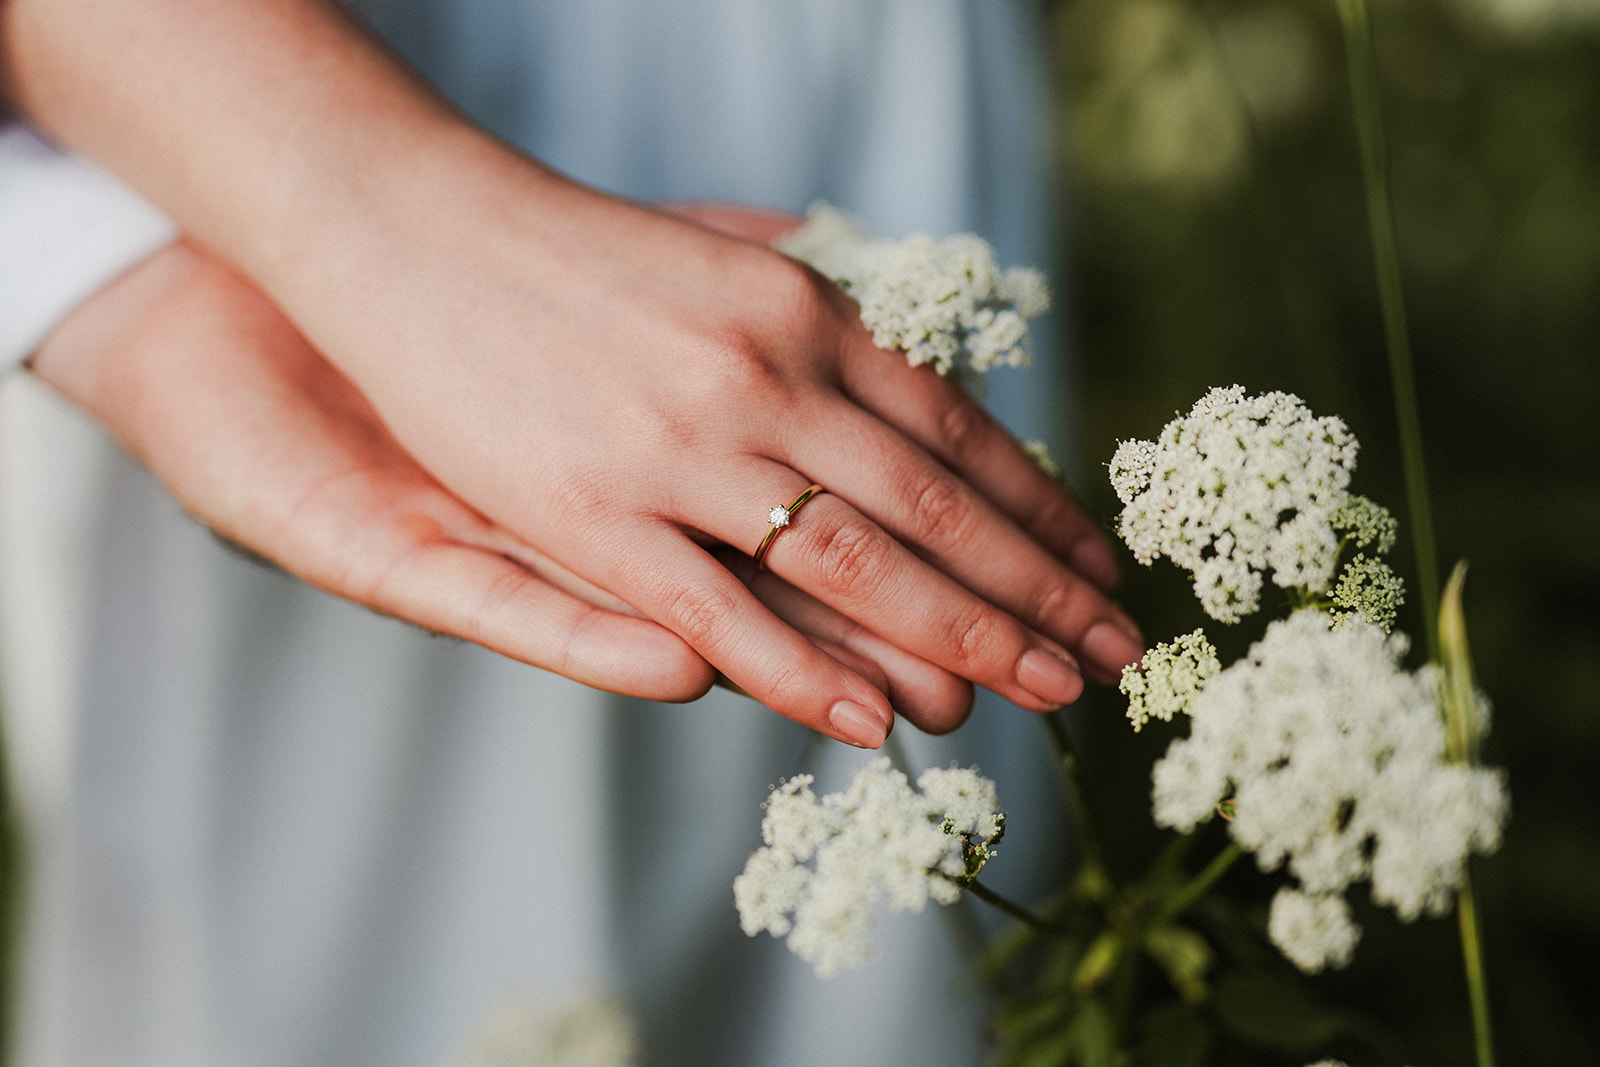 Zbliżenie na dłonie narzeczonych pośród kwiatów. Na palcu widoczny jest pierścionek zaręczynowy